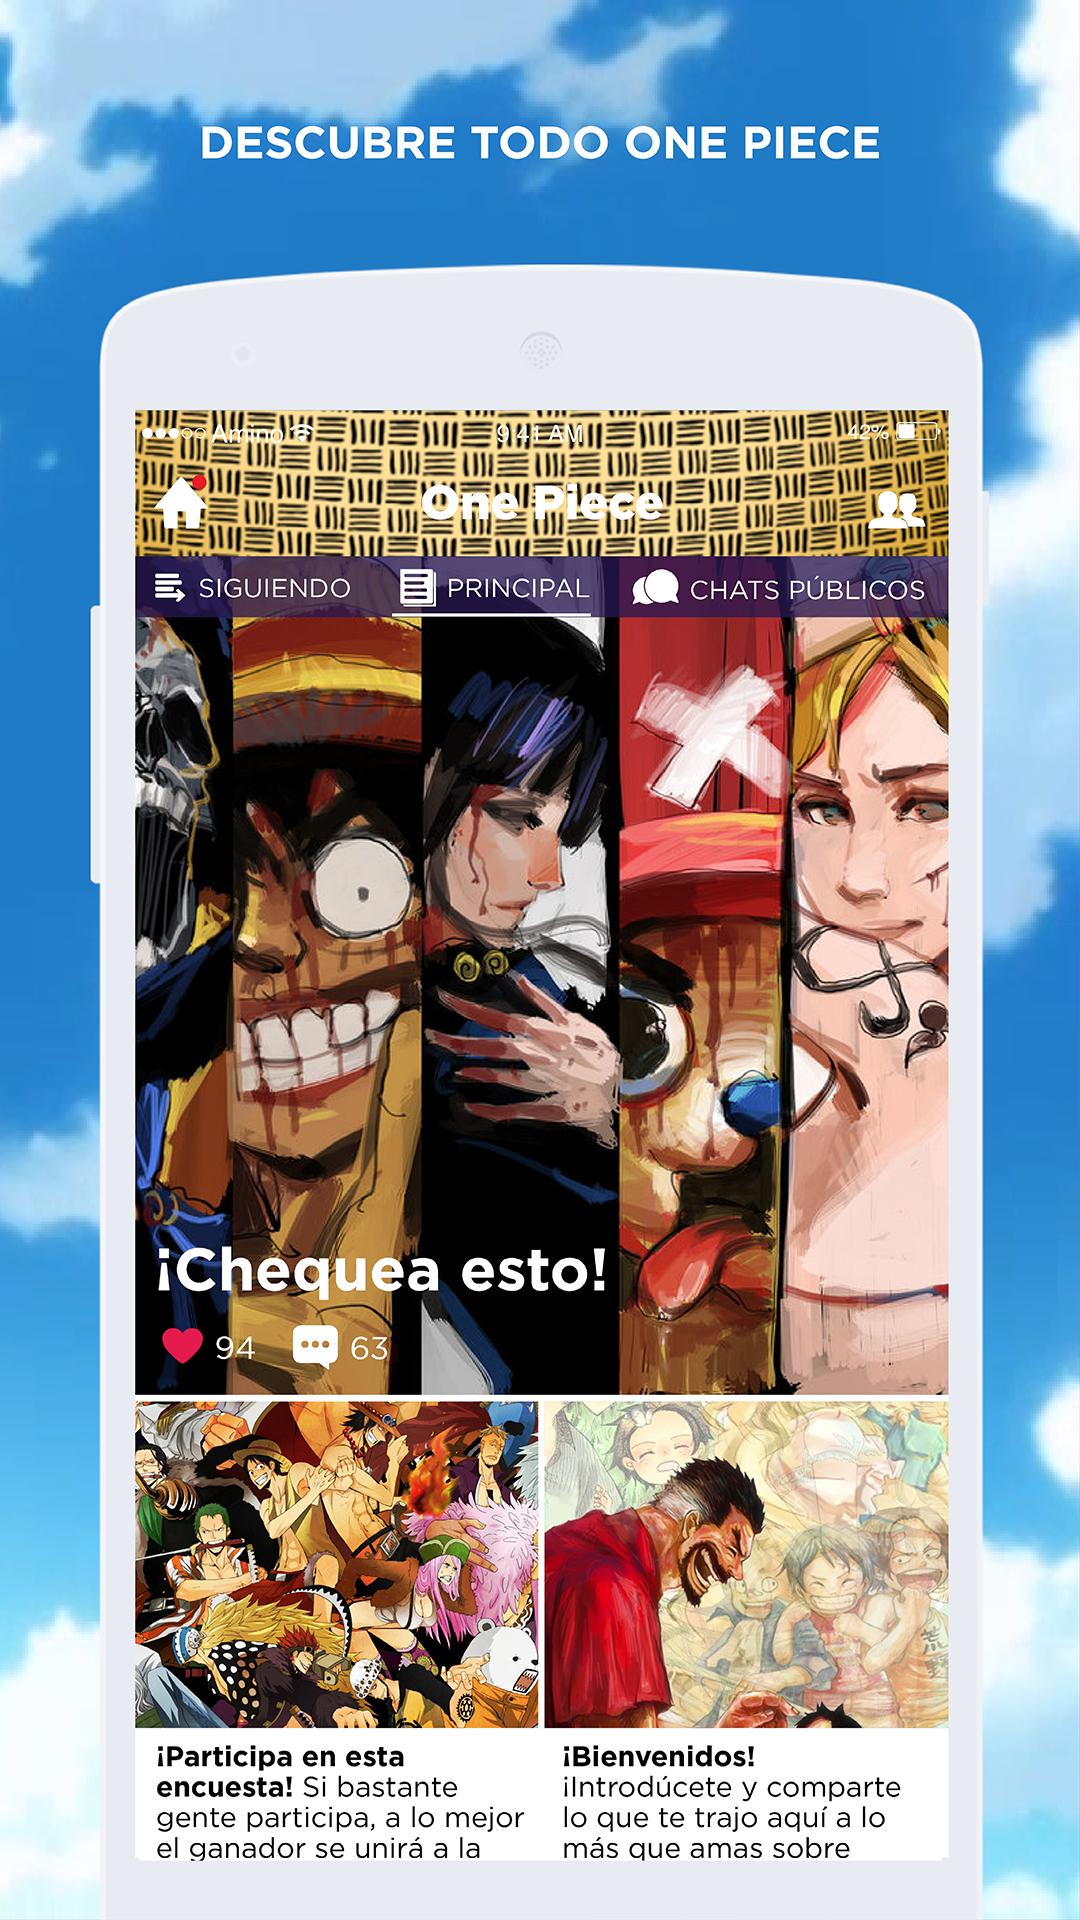 One Piece Amino En Español For Android Apk Download - mejor juego roblox amino en espa#U00f1ol amino